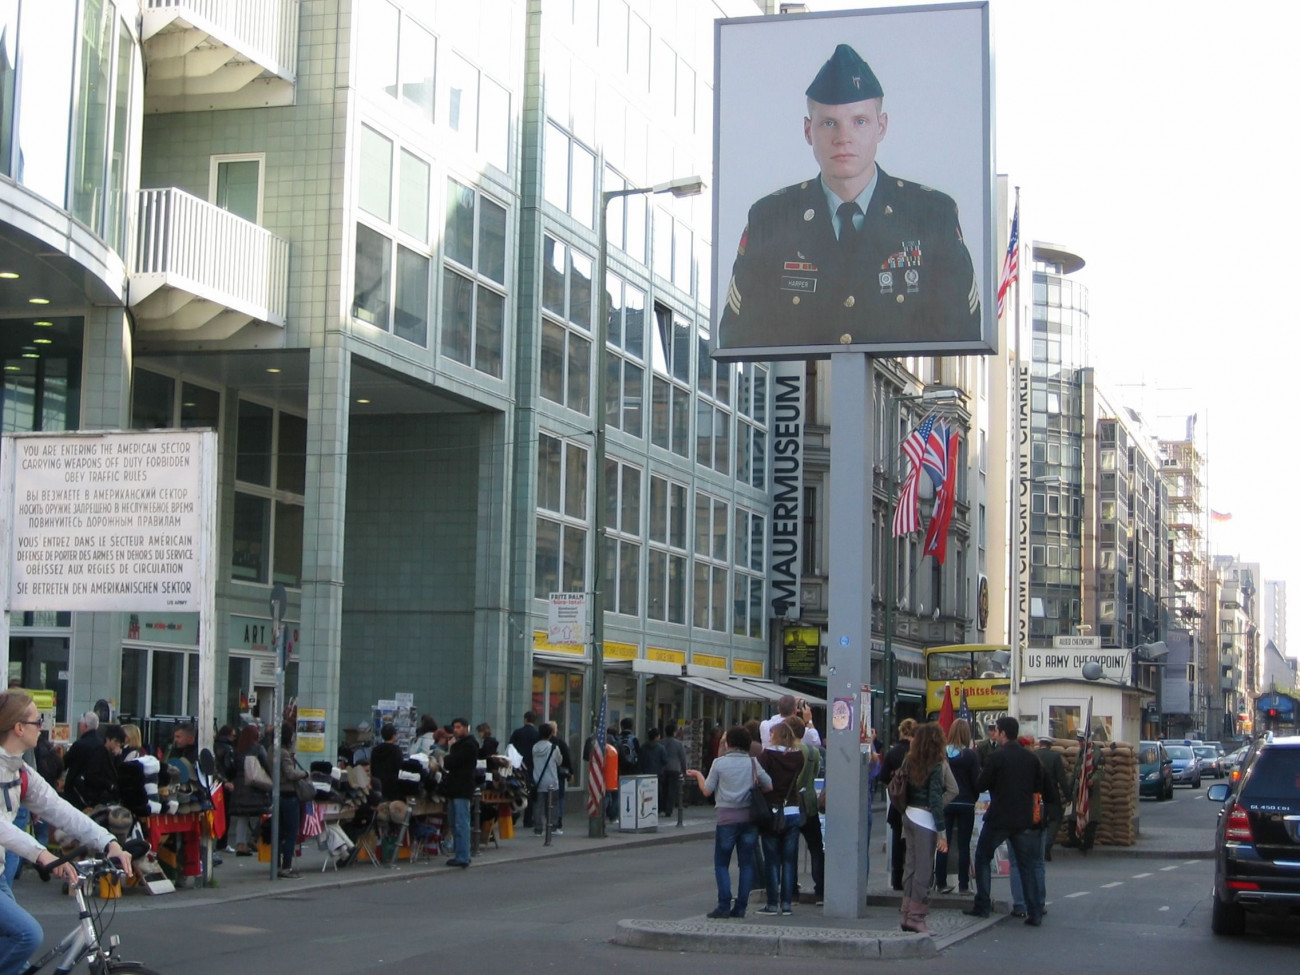 Berlin, 2010. október 3.
A Berlin amerikai és szovjet szektorát összekötő egykori határátkelő, a Checkpoint Charlie helyén álló oszlop, rajta egy amerikai katona portréja, valamint egy homokzsákokkal körülrakott őrbódé 2010. október 3-án. A környék ma a szuvenírárusok paradicsoma, az általuk jó pénzért kínált berlini falmaradványok feléről azonban laborvizsgálat kiderítette, hogy hamisítványok. (MTI/Dorogman László)